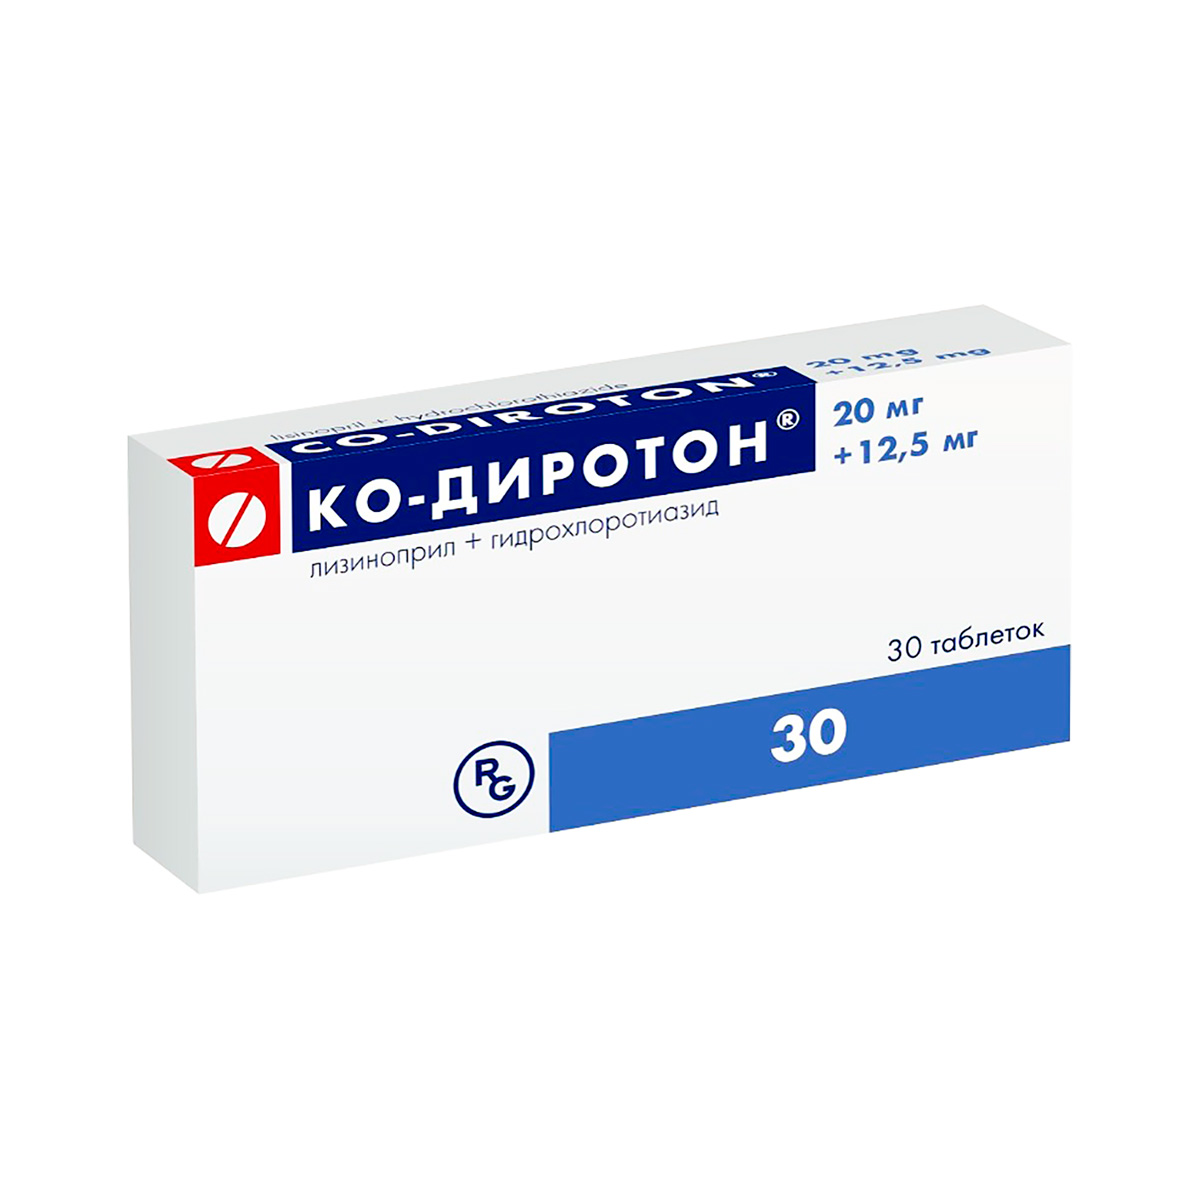 Ко-Диротон 20 мг+12,5 мг таблетки 30 шт